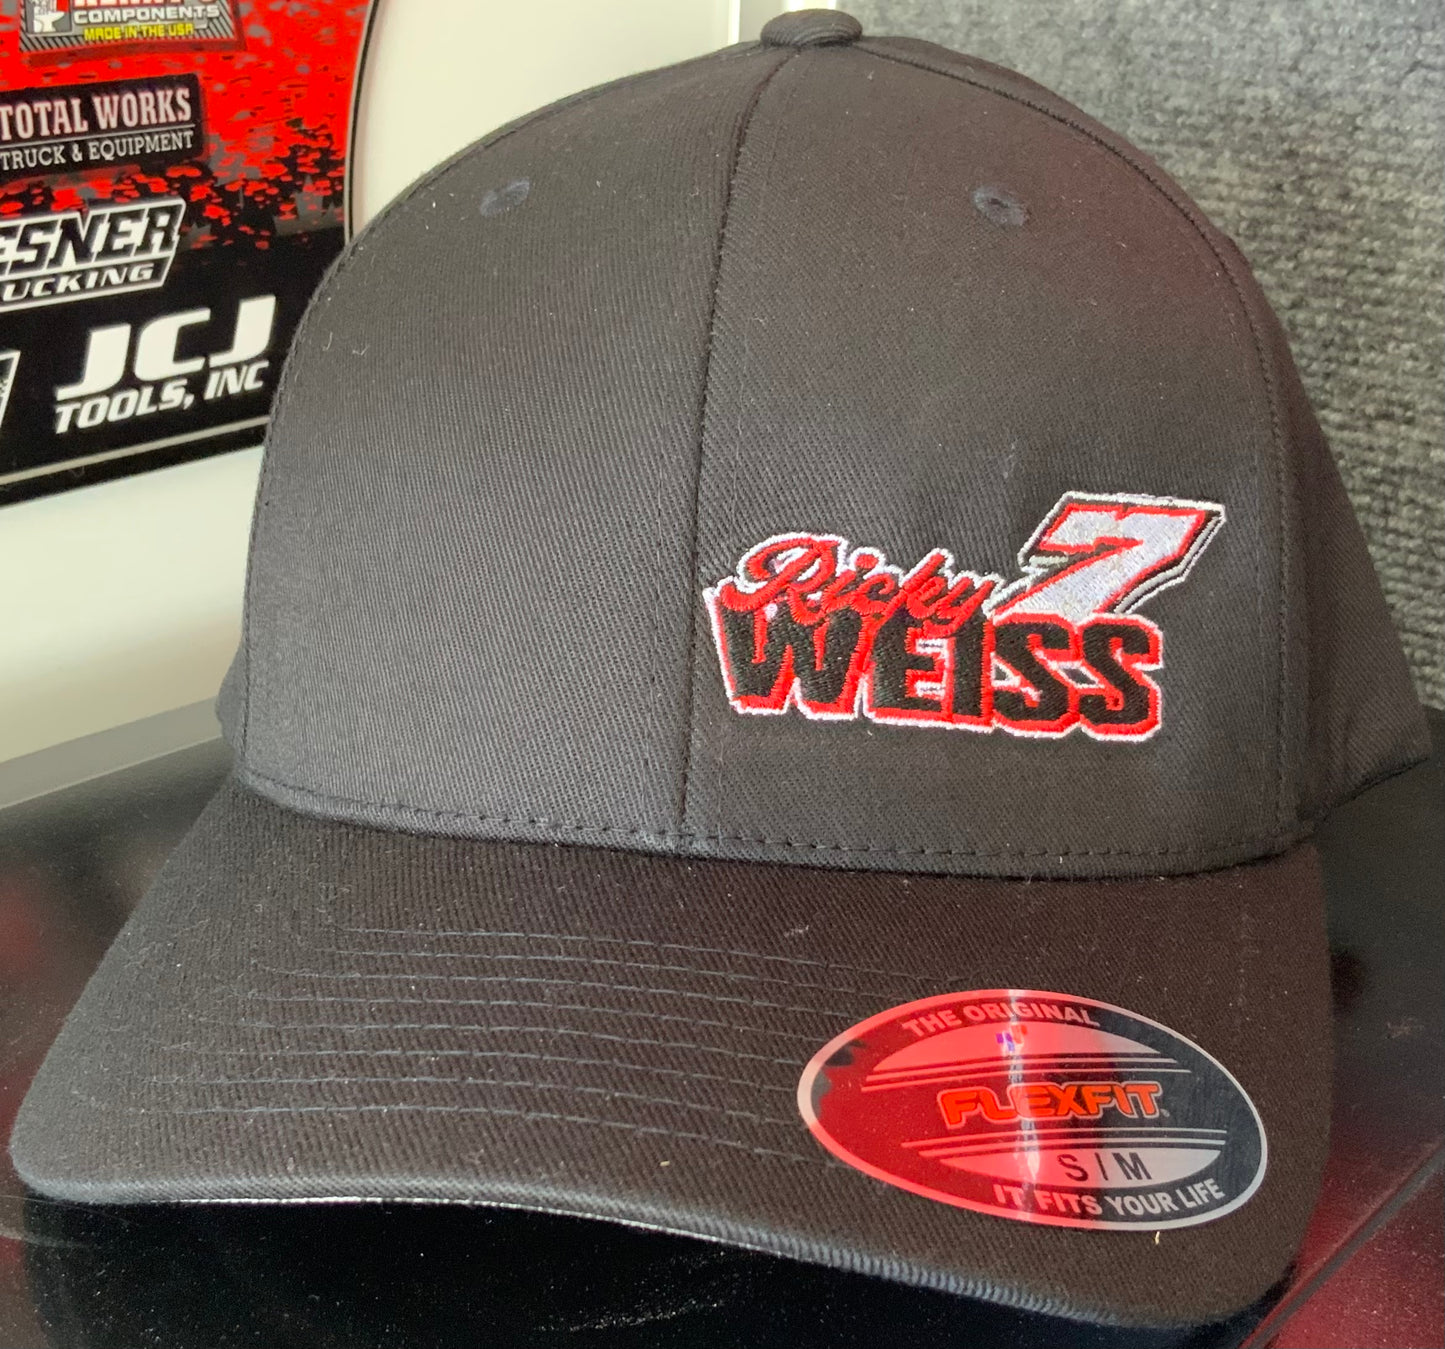 Ricky Weiss White #7 flexfit hat